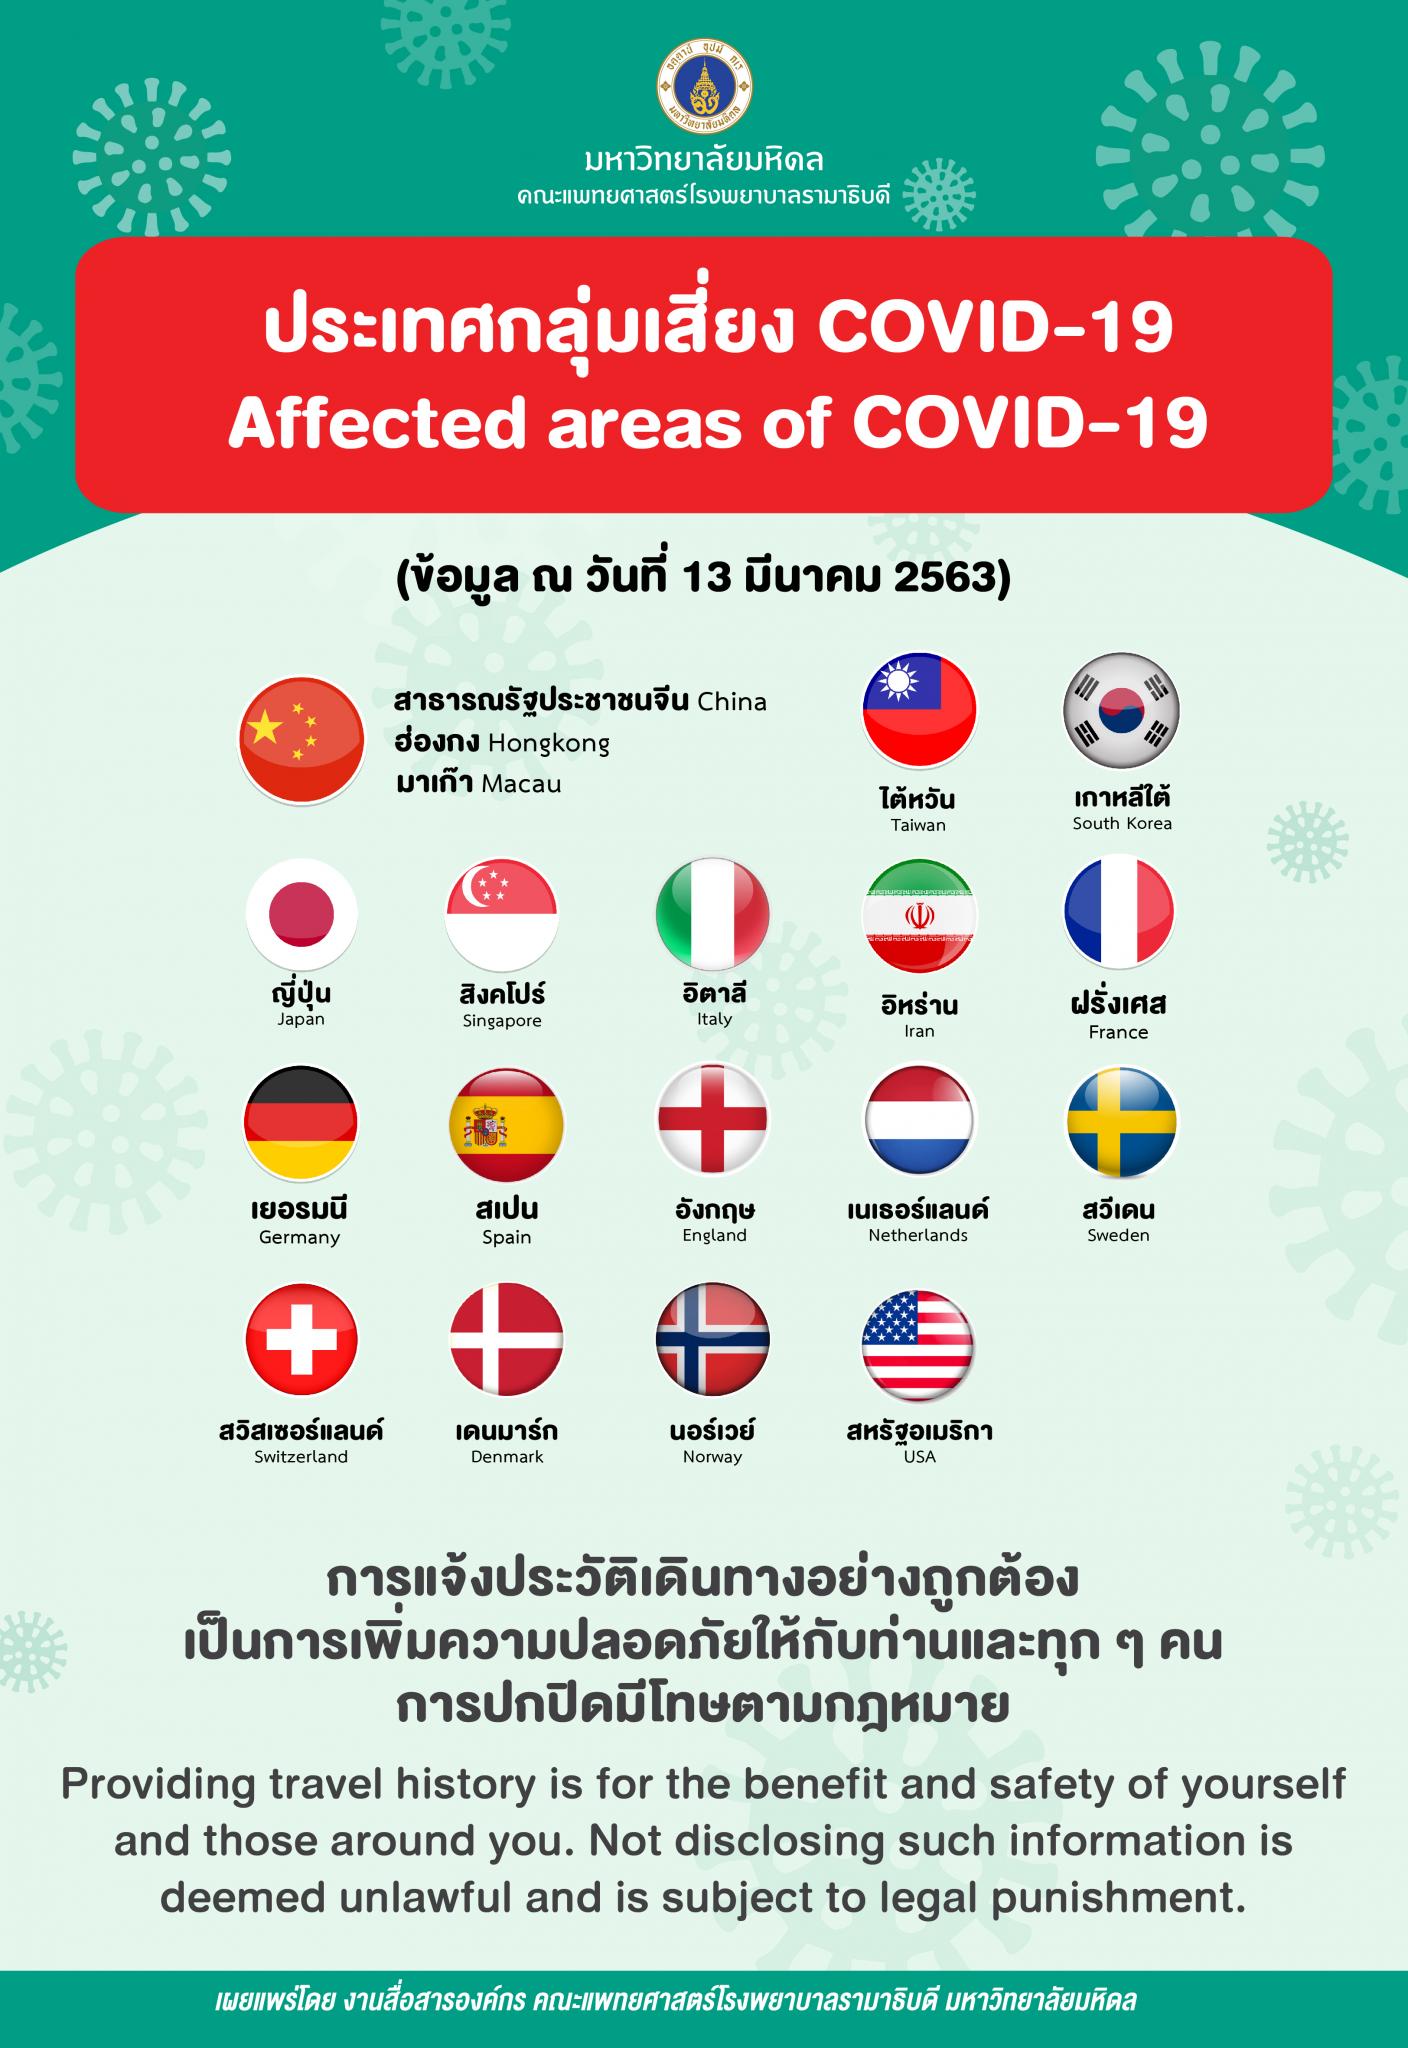 ประเทศกลุ่มเสี่ยง COVID-19 (Affected areas of COVID-19)